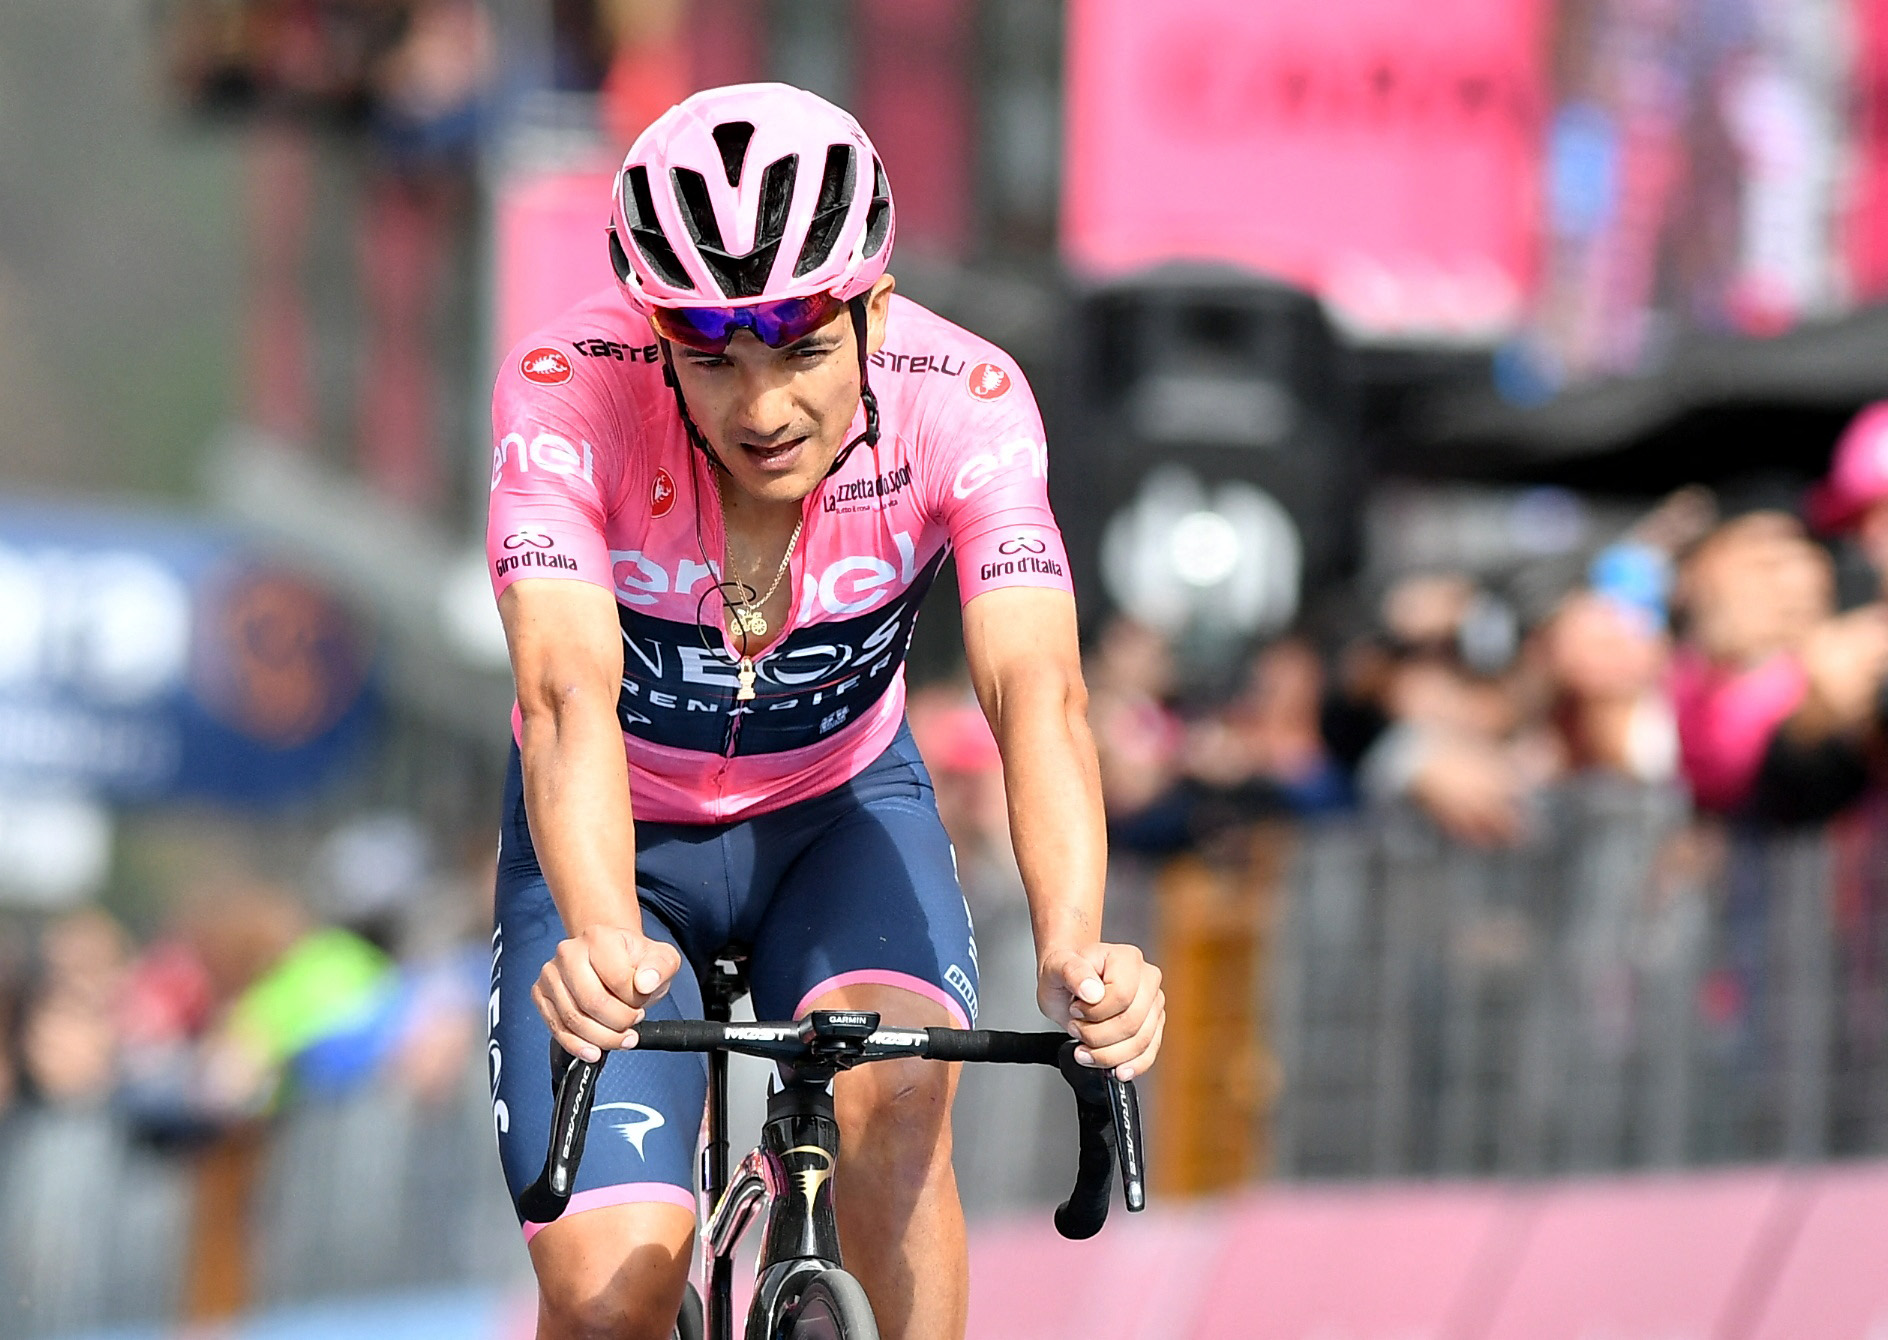 Giro de Italia: Richard Carapaz sufre en la etapa 20 y pierde la Maglia Rosa, Santiago Buitrago sigue como el mejor colombiano